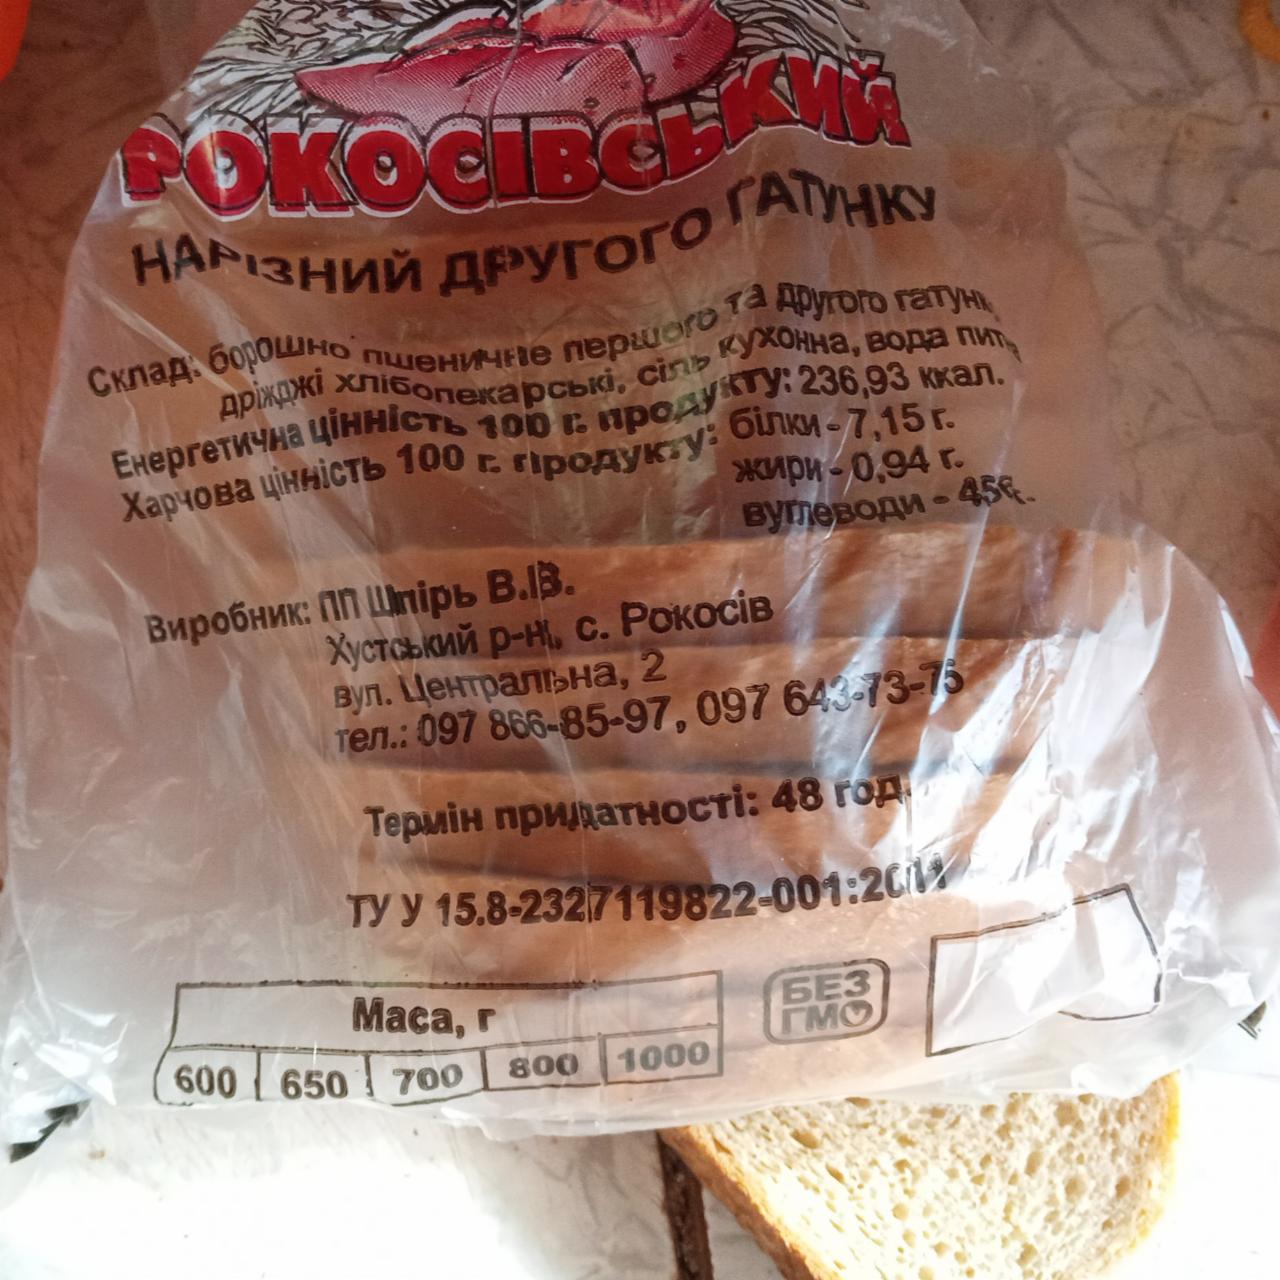 Фото - Рокосівський хліб нарізний другого ґатунку ПП Шпірь В. В